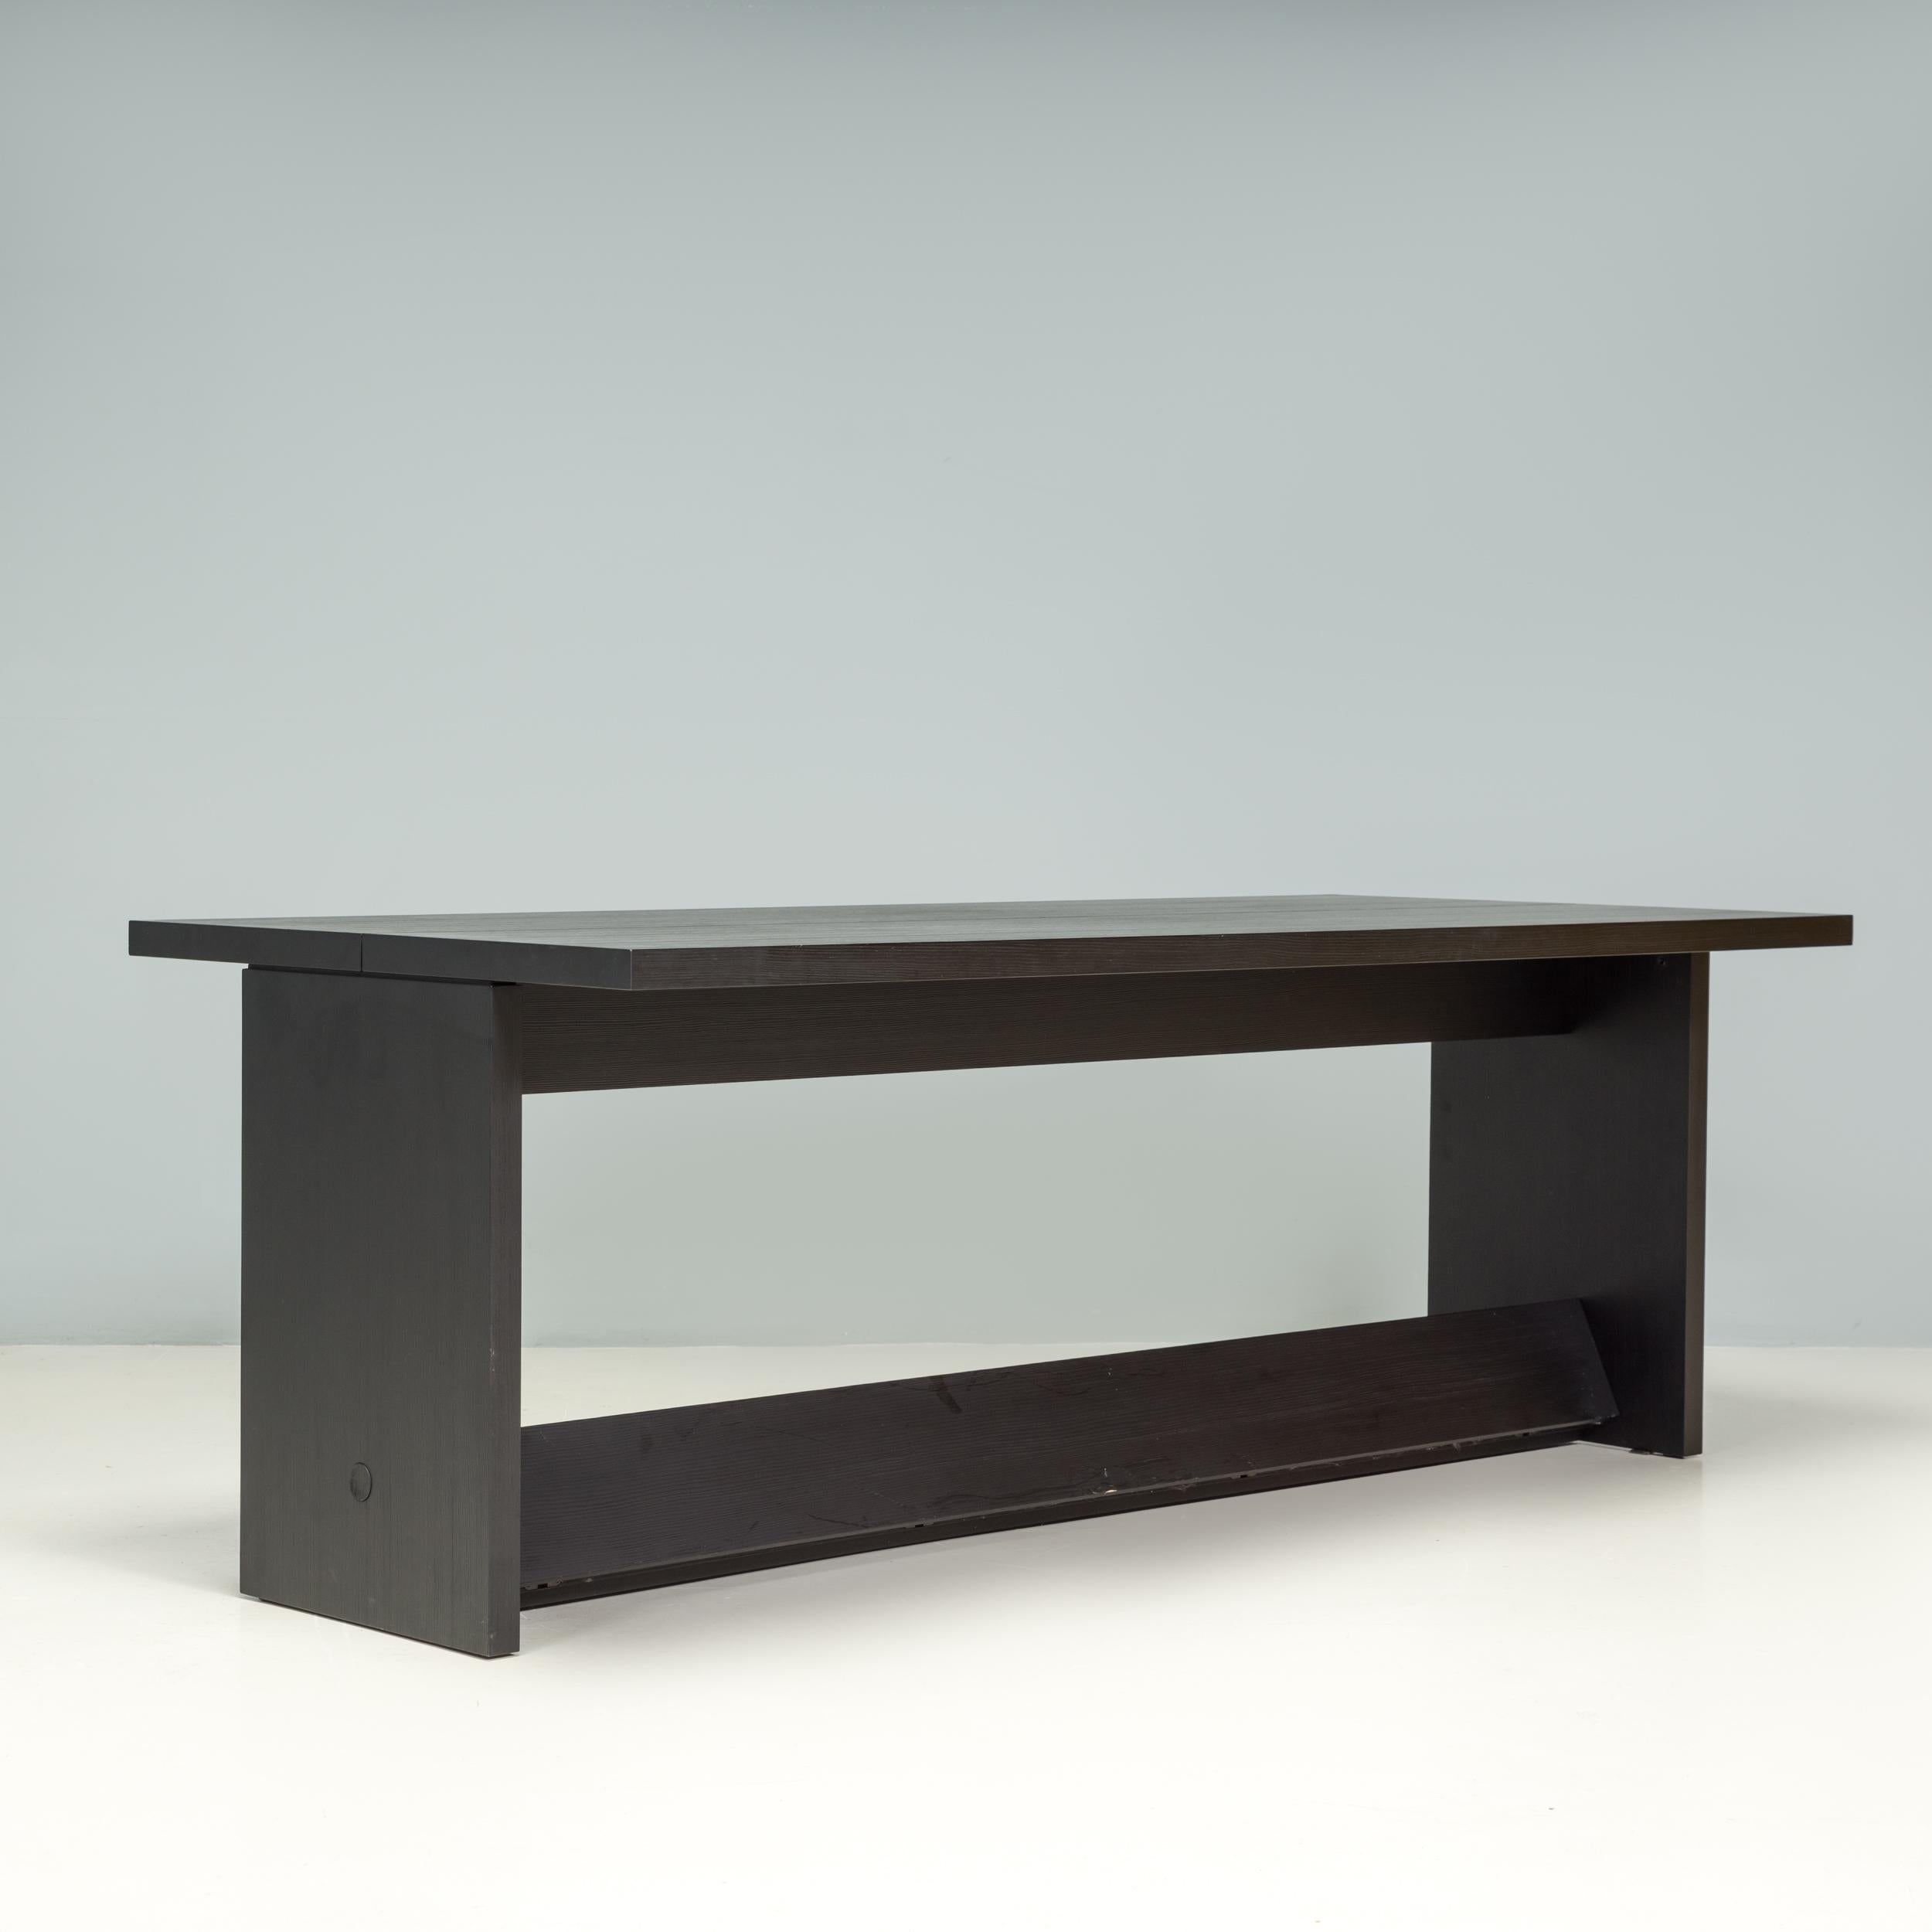 Conçue à l'origine par Antonio Citterio pour B&B Italia, la table de salle à manger Argo est dotée d'une élégante rainure structurelle qui plonge le plateau. 

Exemple fantastique de design italien contemporain, la table de salle à manger est